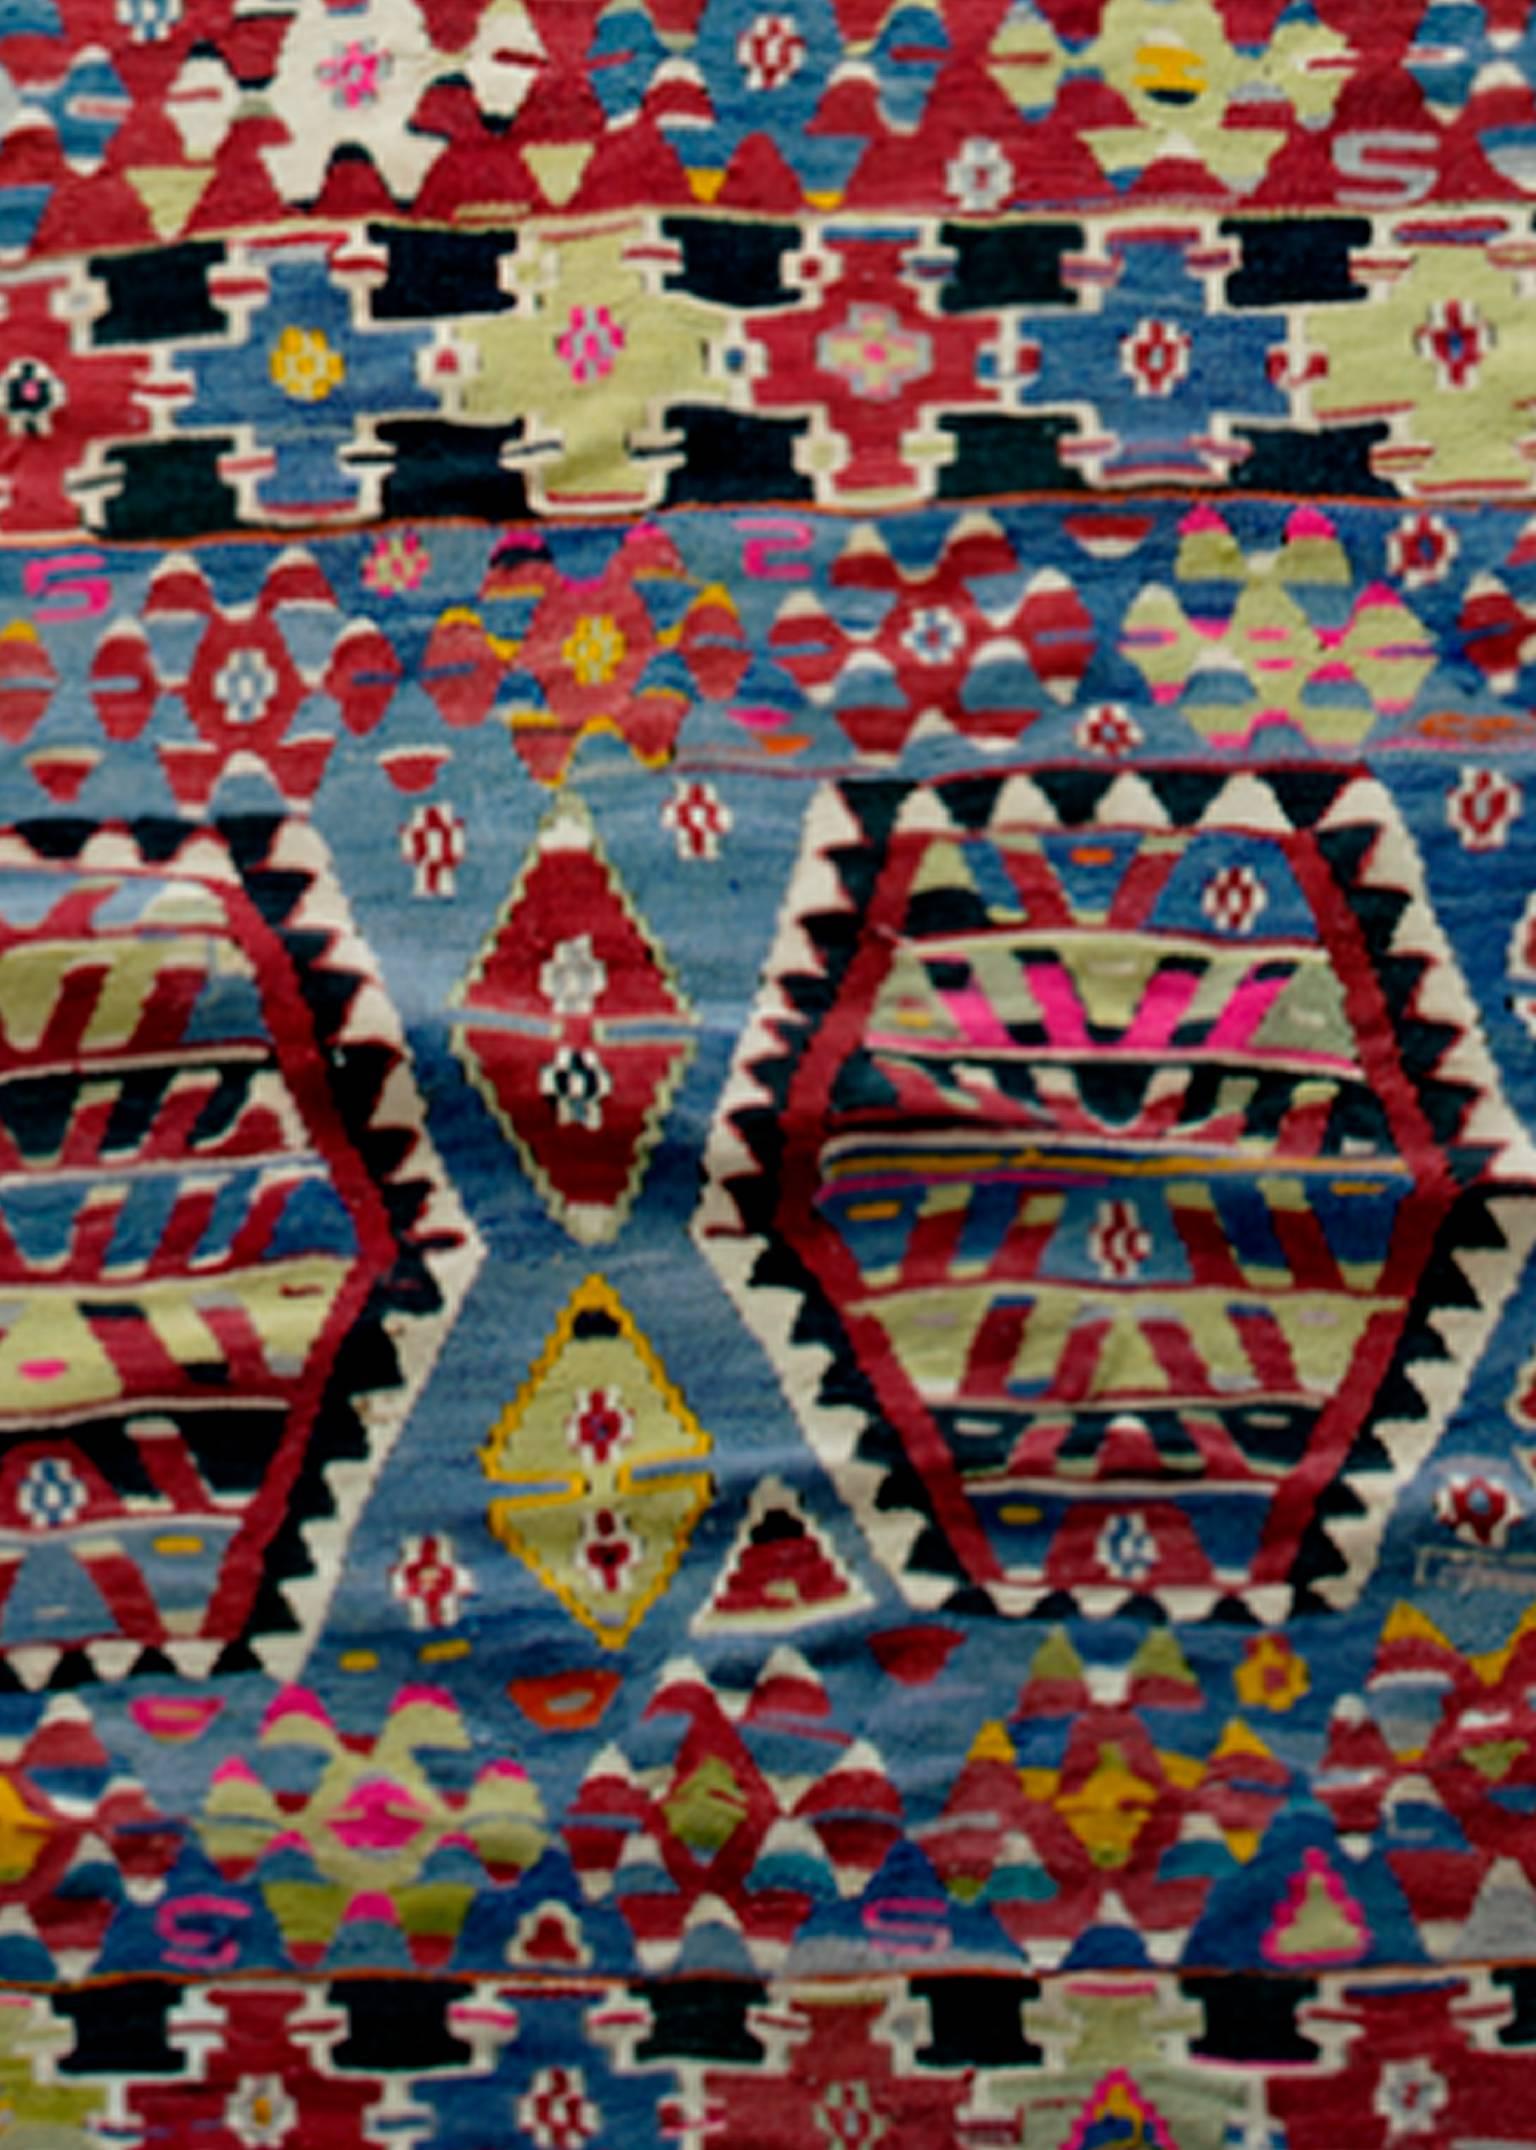 Dieser Kilim-Teppich wurde in der Türkei etwa Mitte des 20. Jahrhunderts aus Wolle handgewebt. Er ist mit geometrischen Mustern in Rot, Schwarz, Blau und Gelb versehen und kostet weniger als 4500 $. Das Design passt perfekt zu jedem Dekor, da es